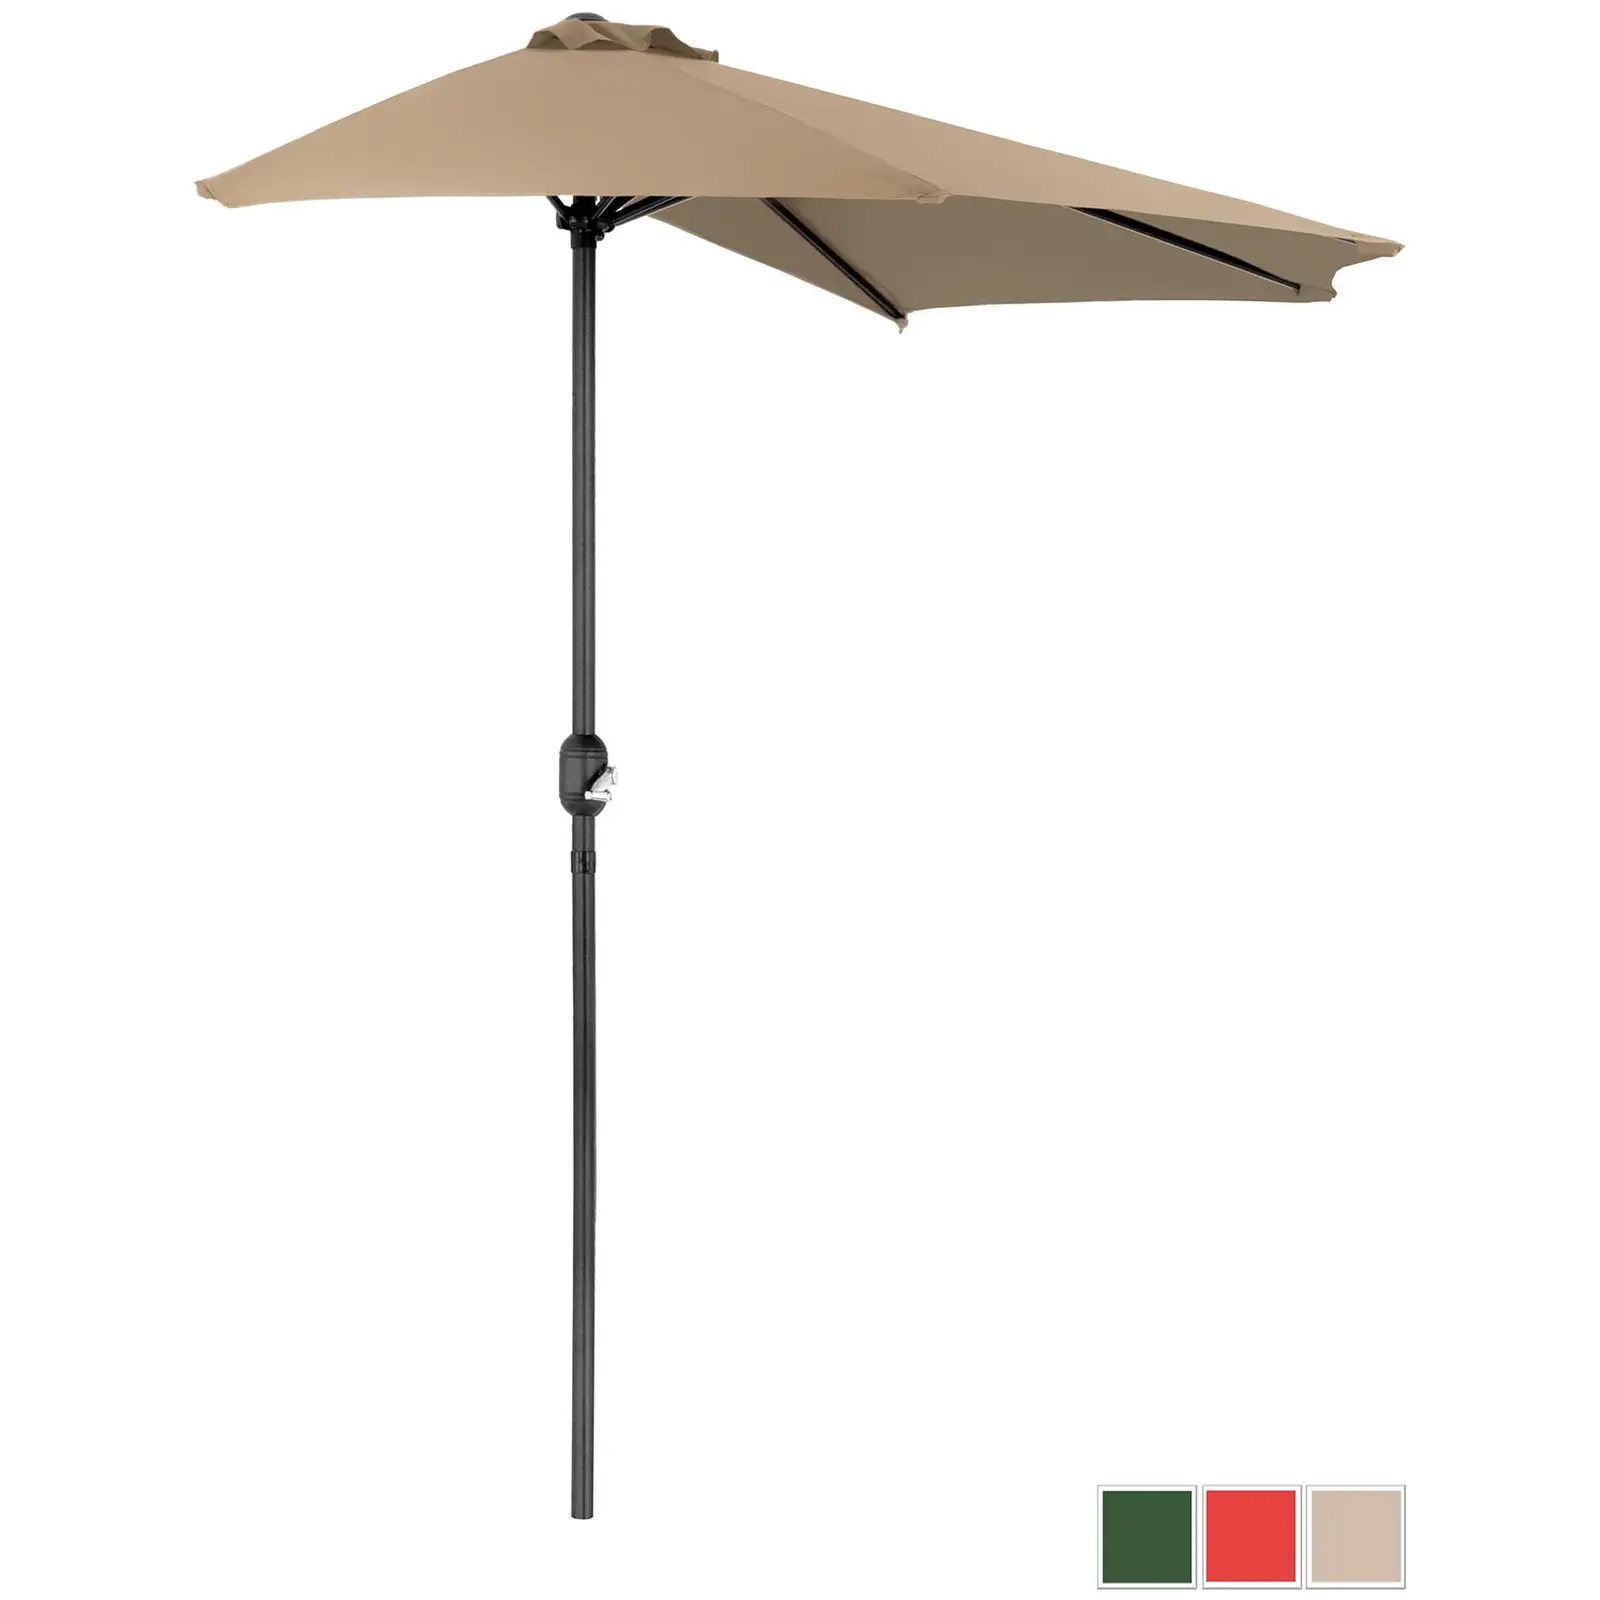 Halv parasol - taupe - femkantet - 270 x 135 cm